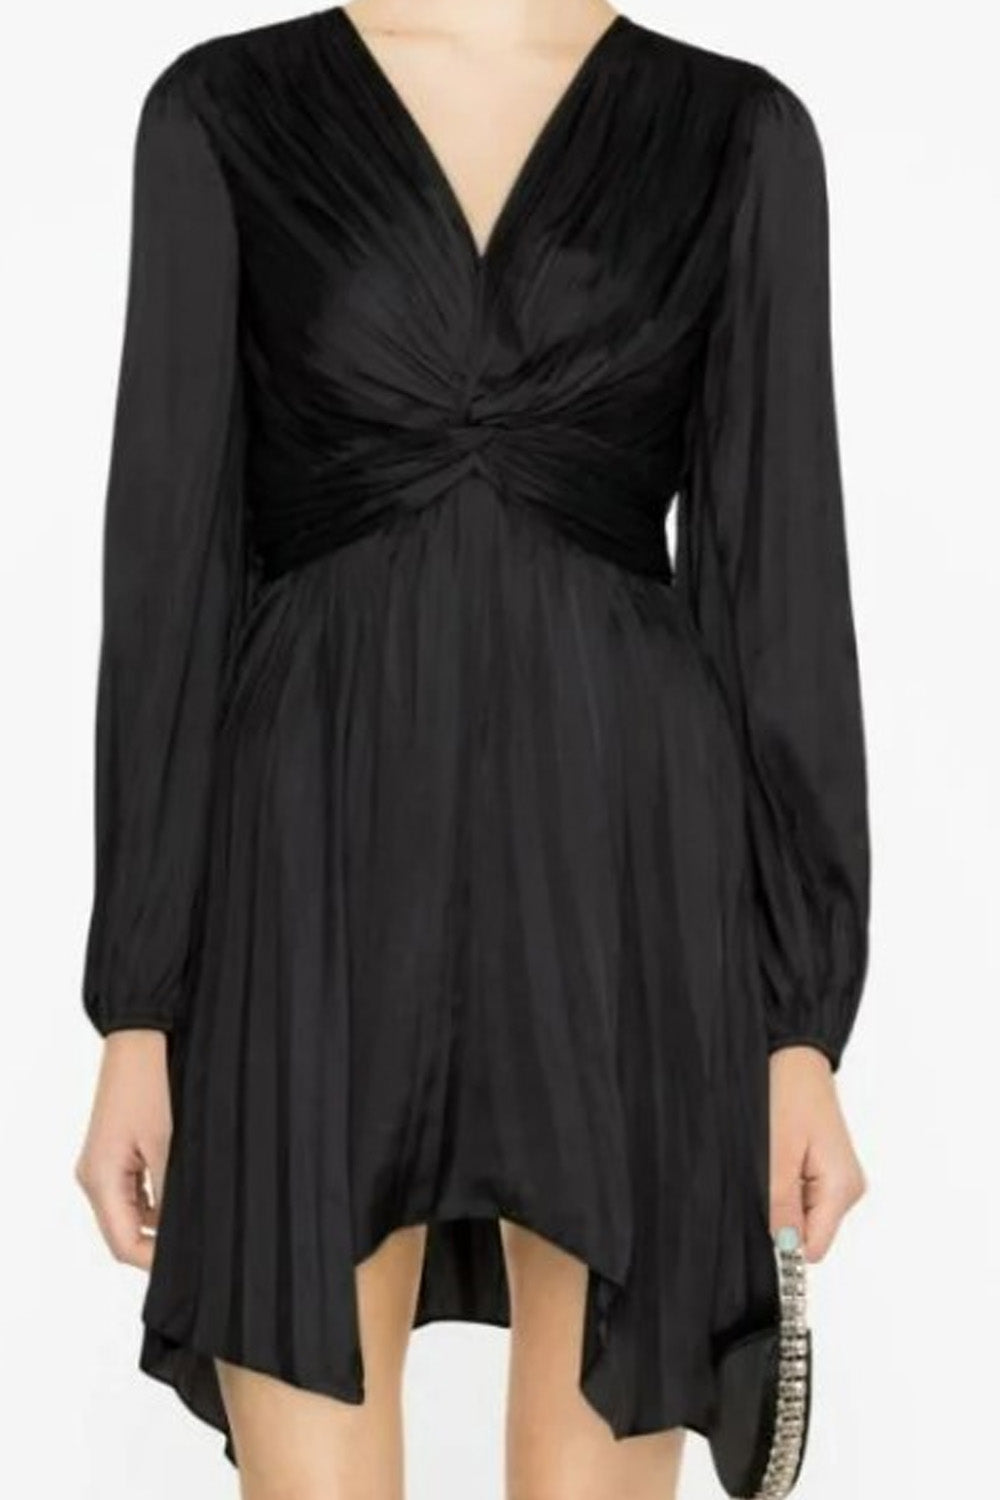 Nocturne Black Dress